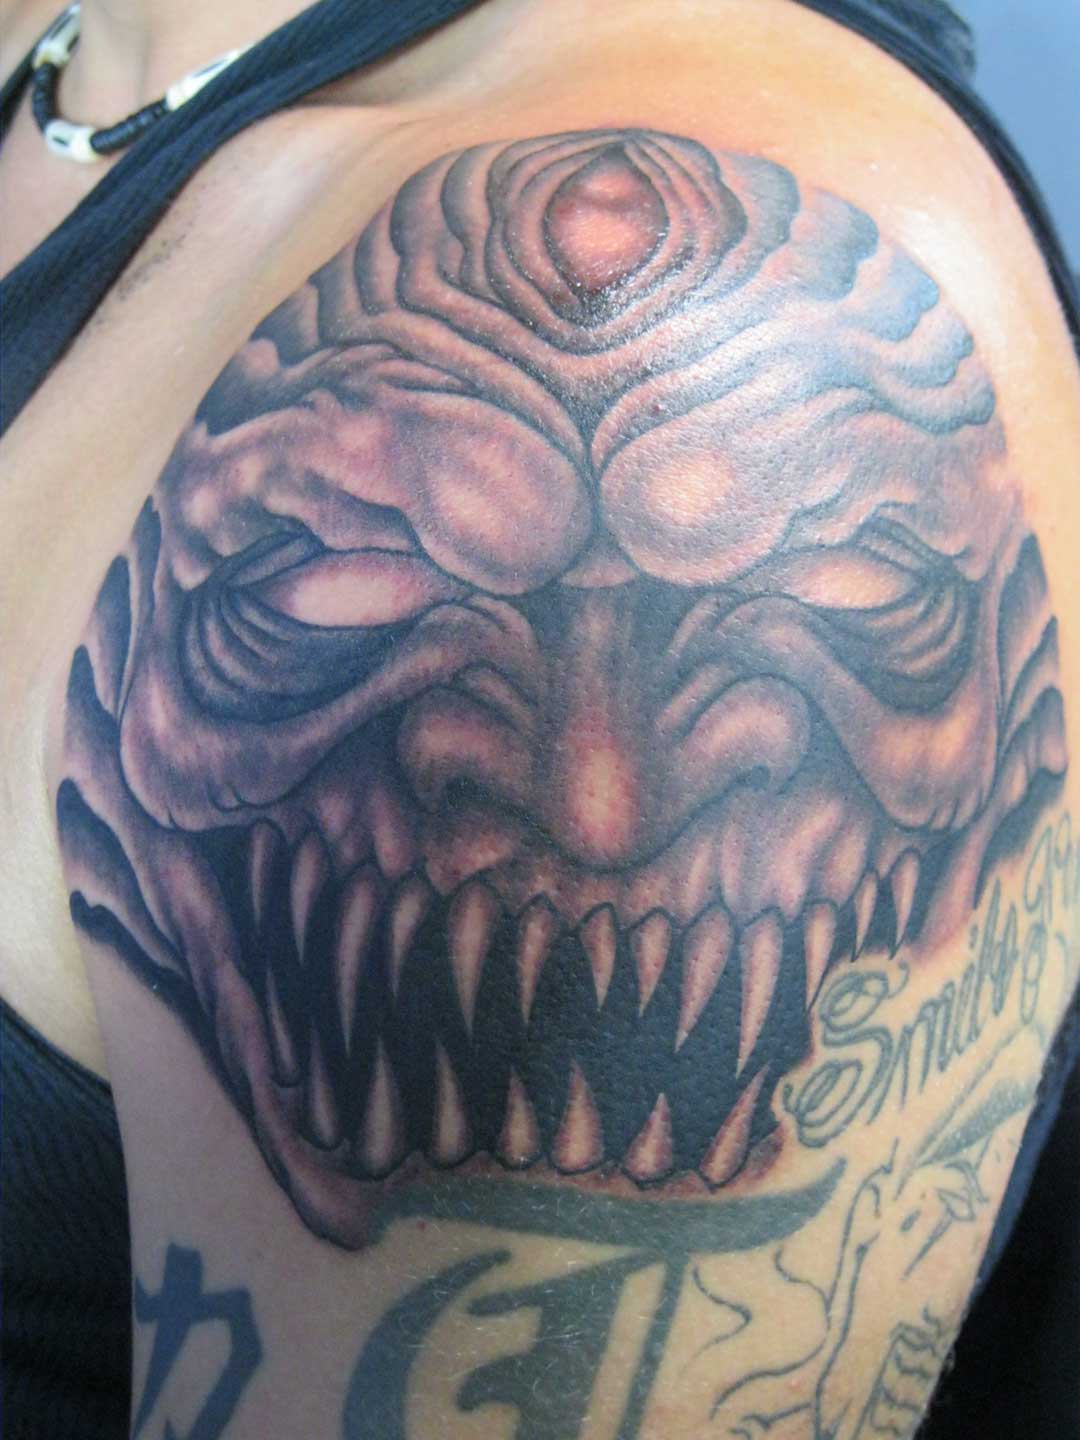 Dark & Scary Demon Tattoo On Shoulder